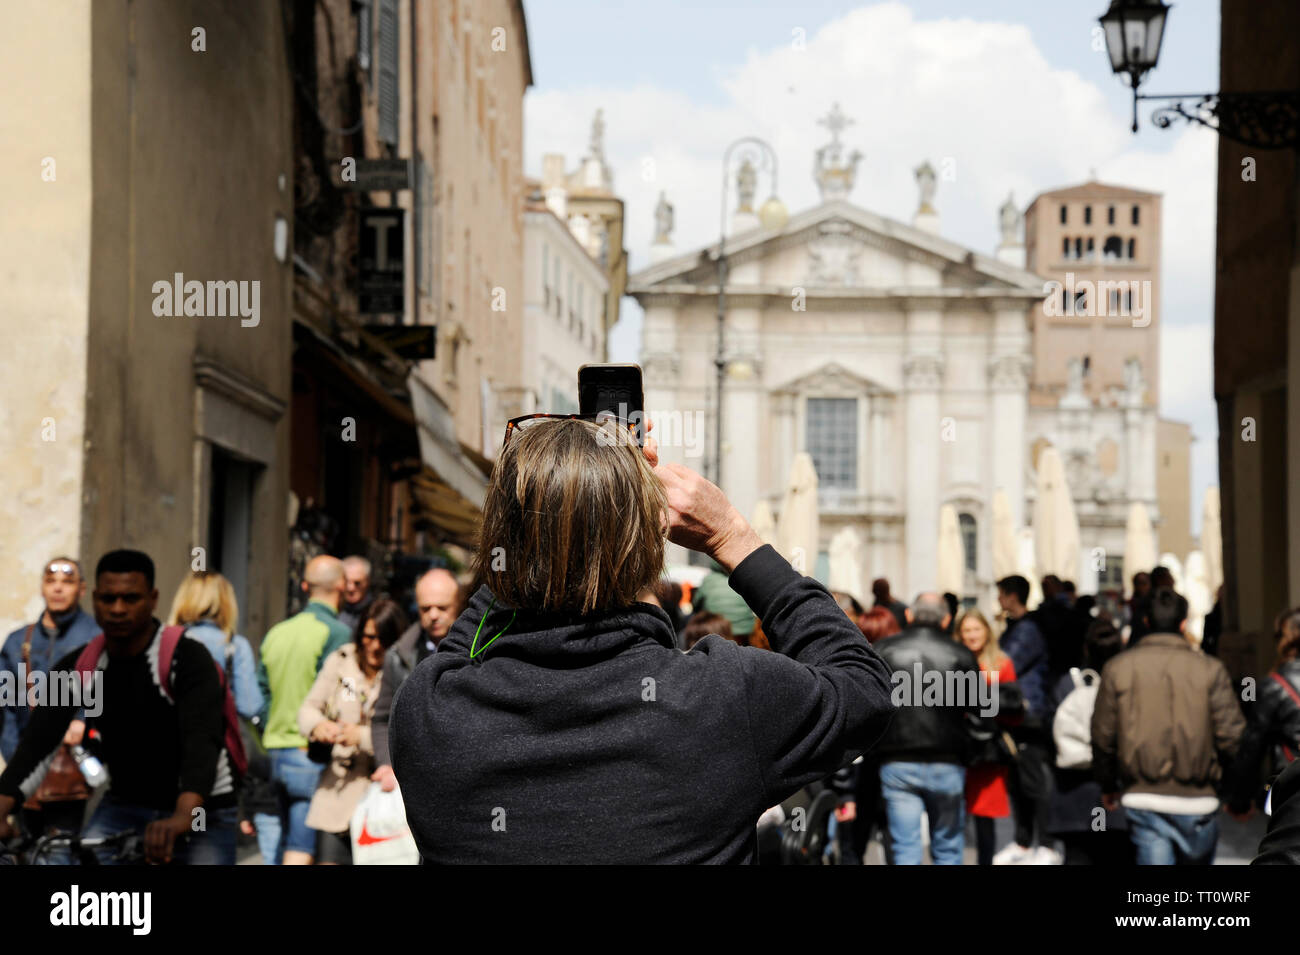 Primo Piano del Turista uomo sulla Strada a Mantova, prendendo Foto di Piazza Sordello con il telefono. Mantova, Italia Stockfoto